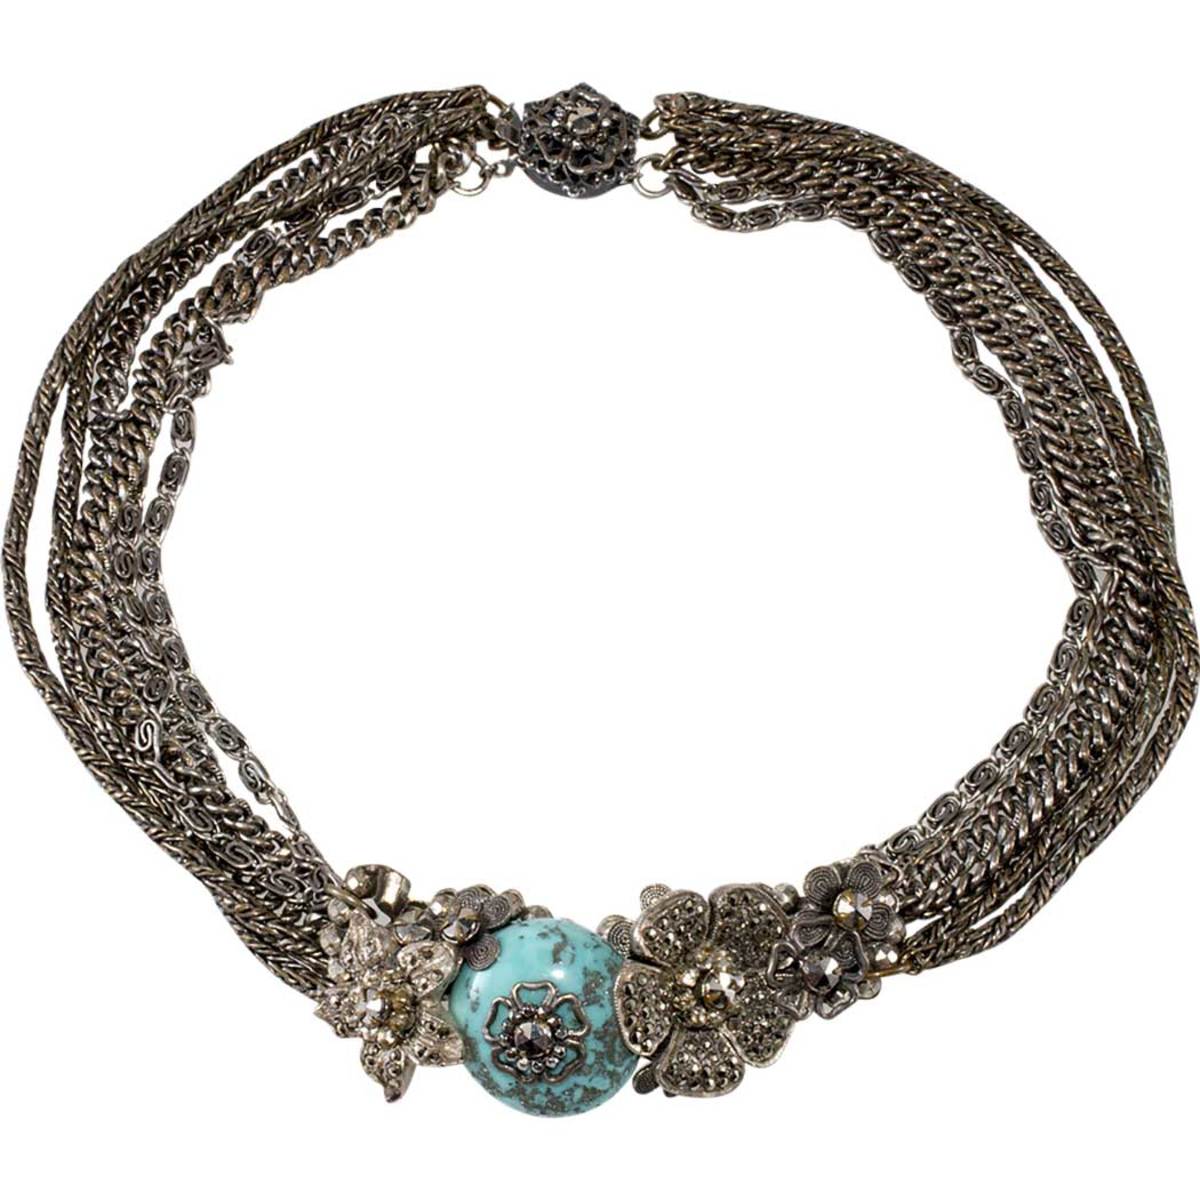 Miriam Haskell chocker necklace